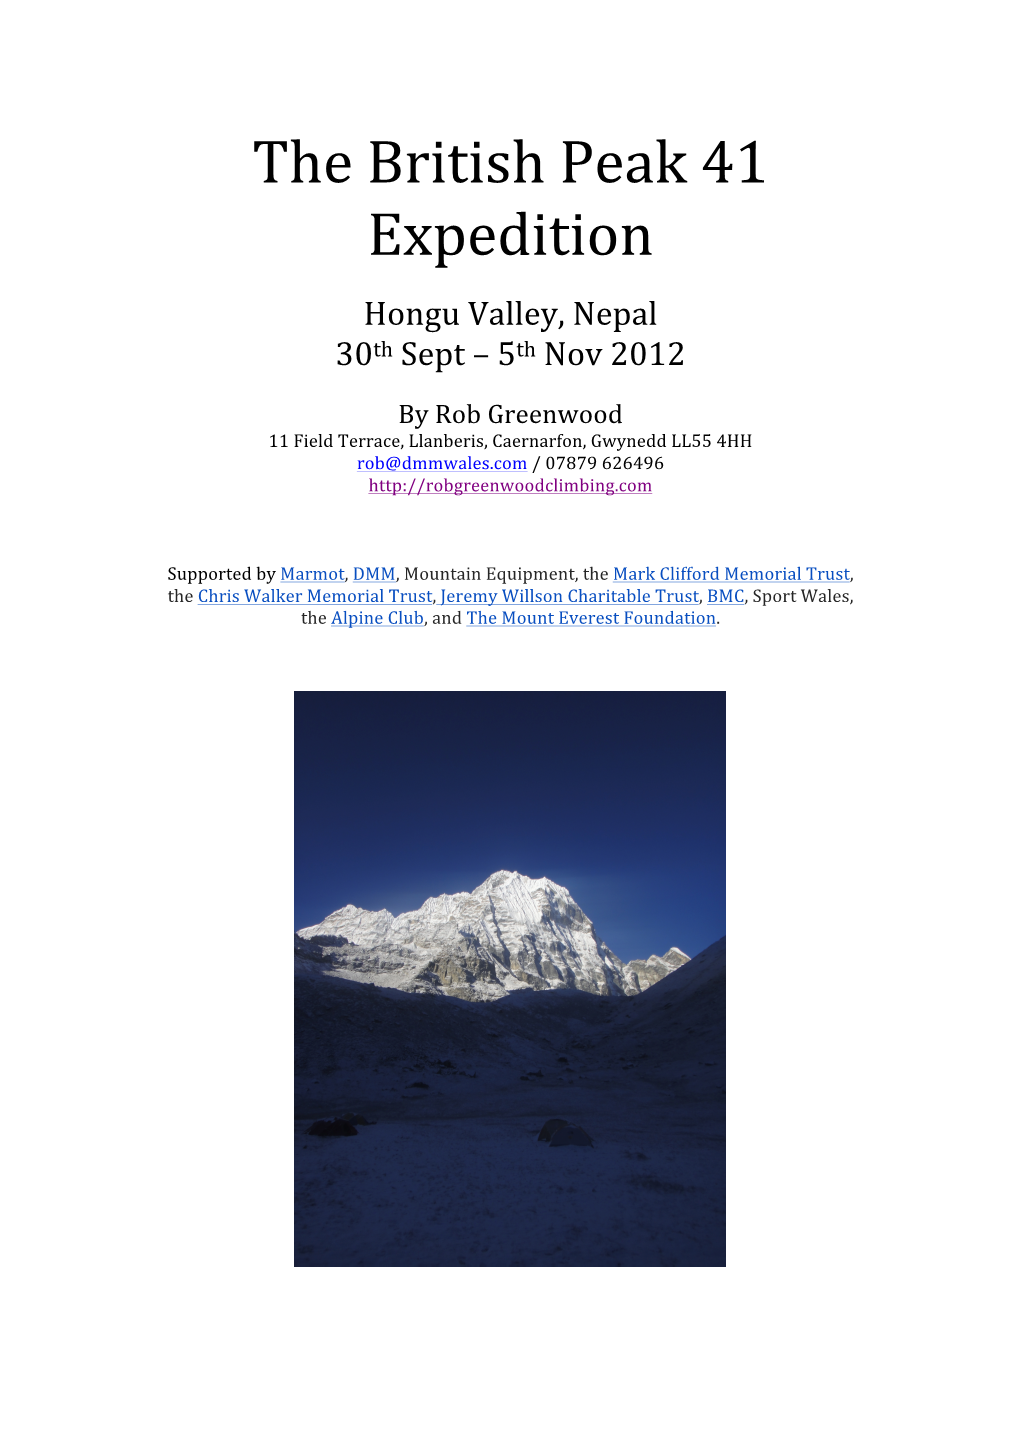 The British Peak 41 Expedition